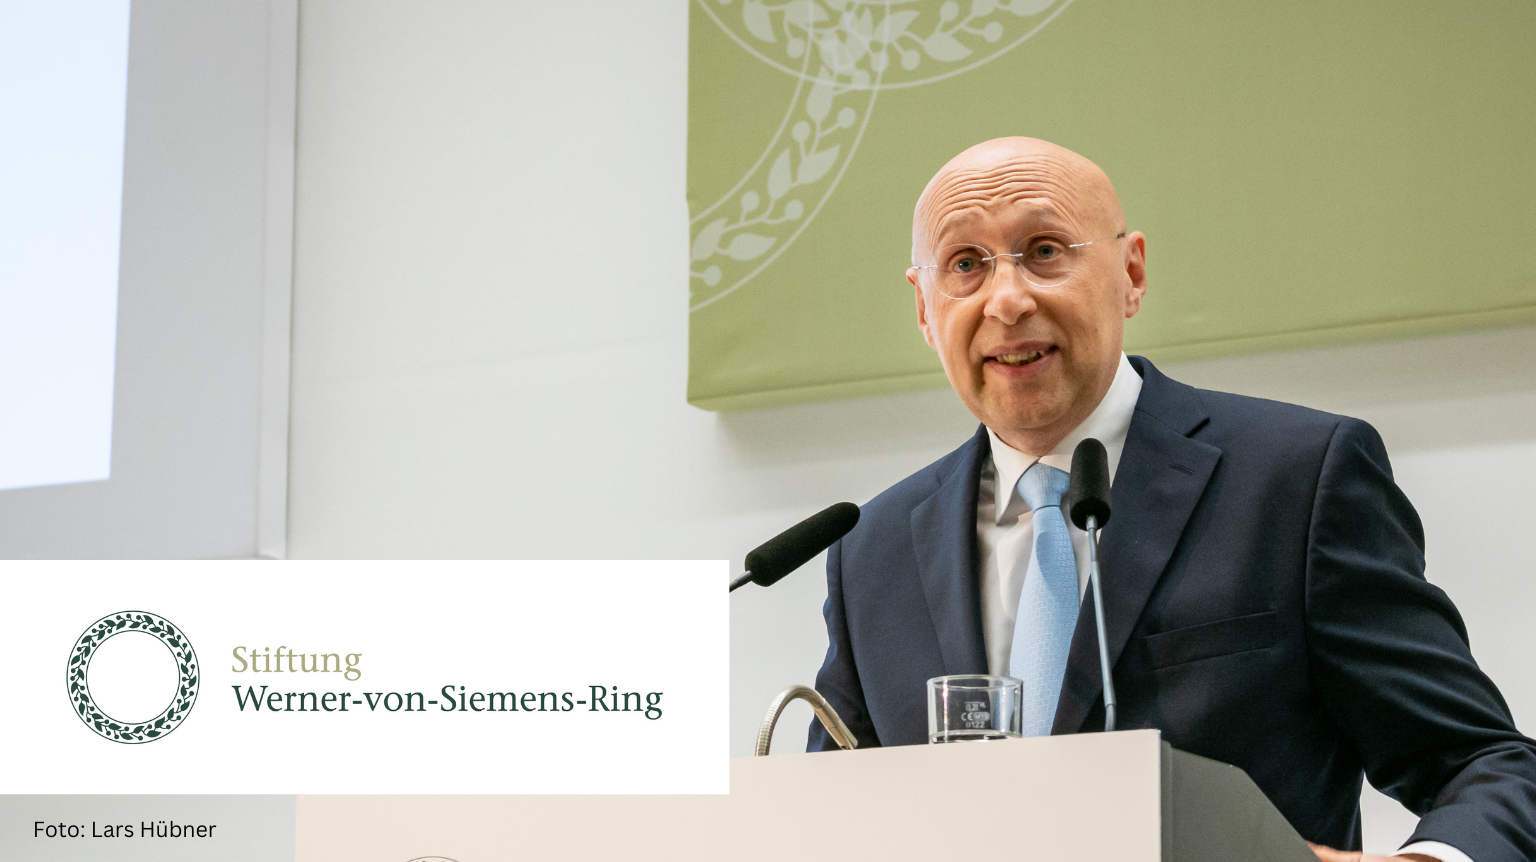 Foto von Stefan Hell am Rednerpult zur Verleihung des 40. und 41. Werner-von-Siemens-Rings 2022. Links unten die Wort- und Bildmarke der Stiftung Werner-von-Siemens-Ring